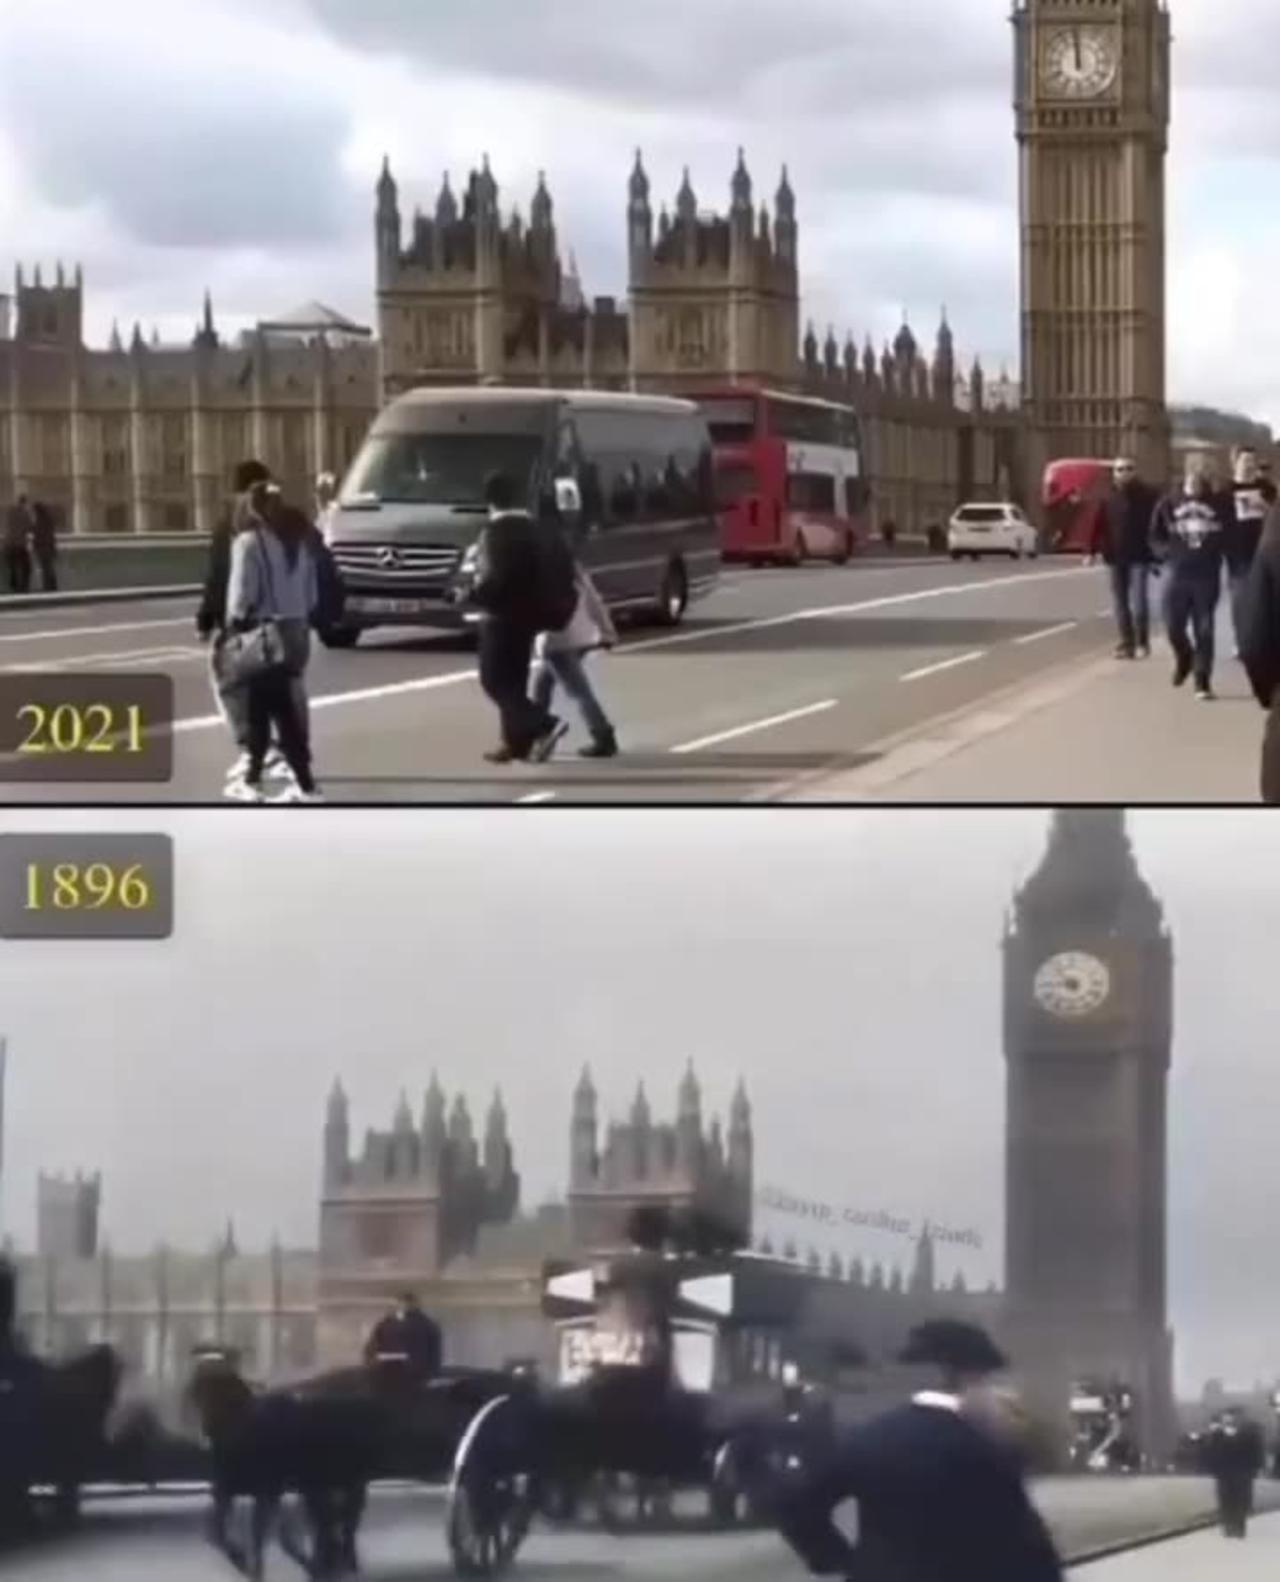 London Westminster bridge 125 years apart